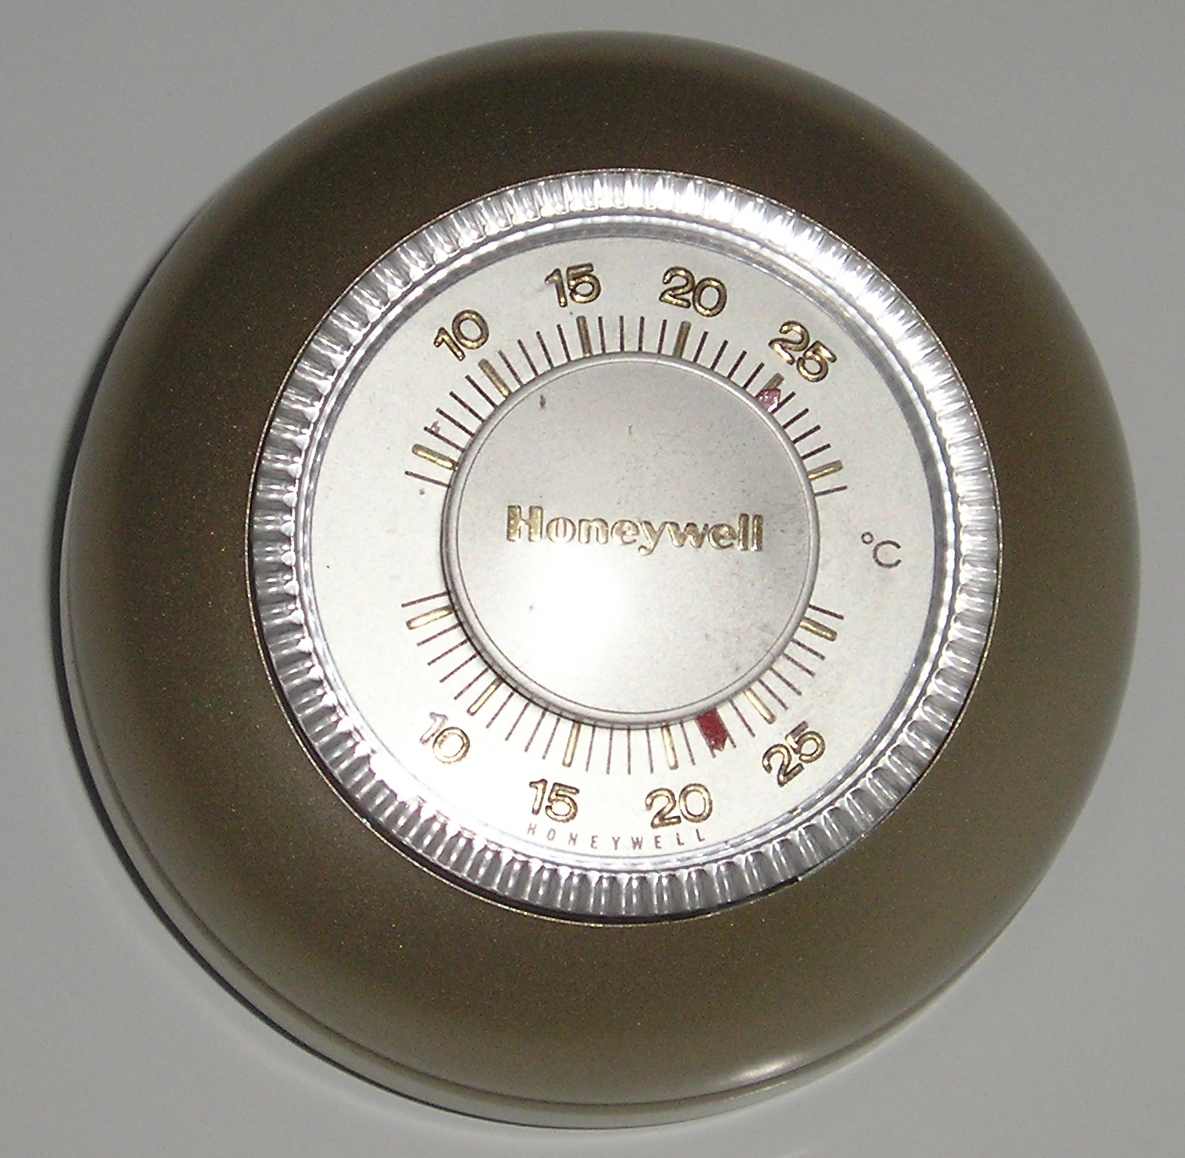 Le thermostat est un système qui permet de réguler la température. © Vincent de Groot, CC BY-SA 3.0, Wikimedia Commons